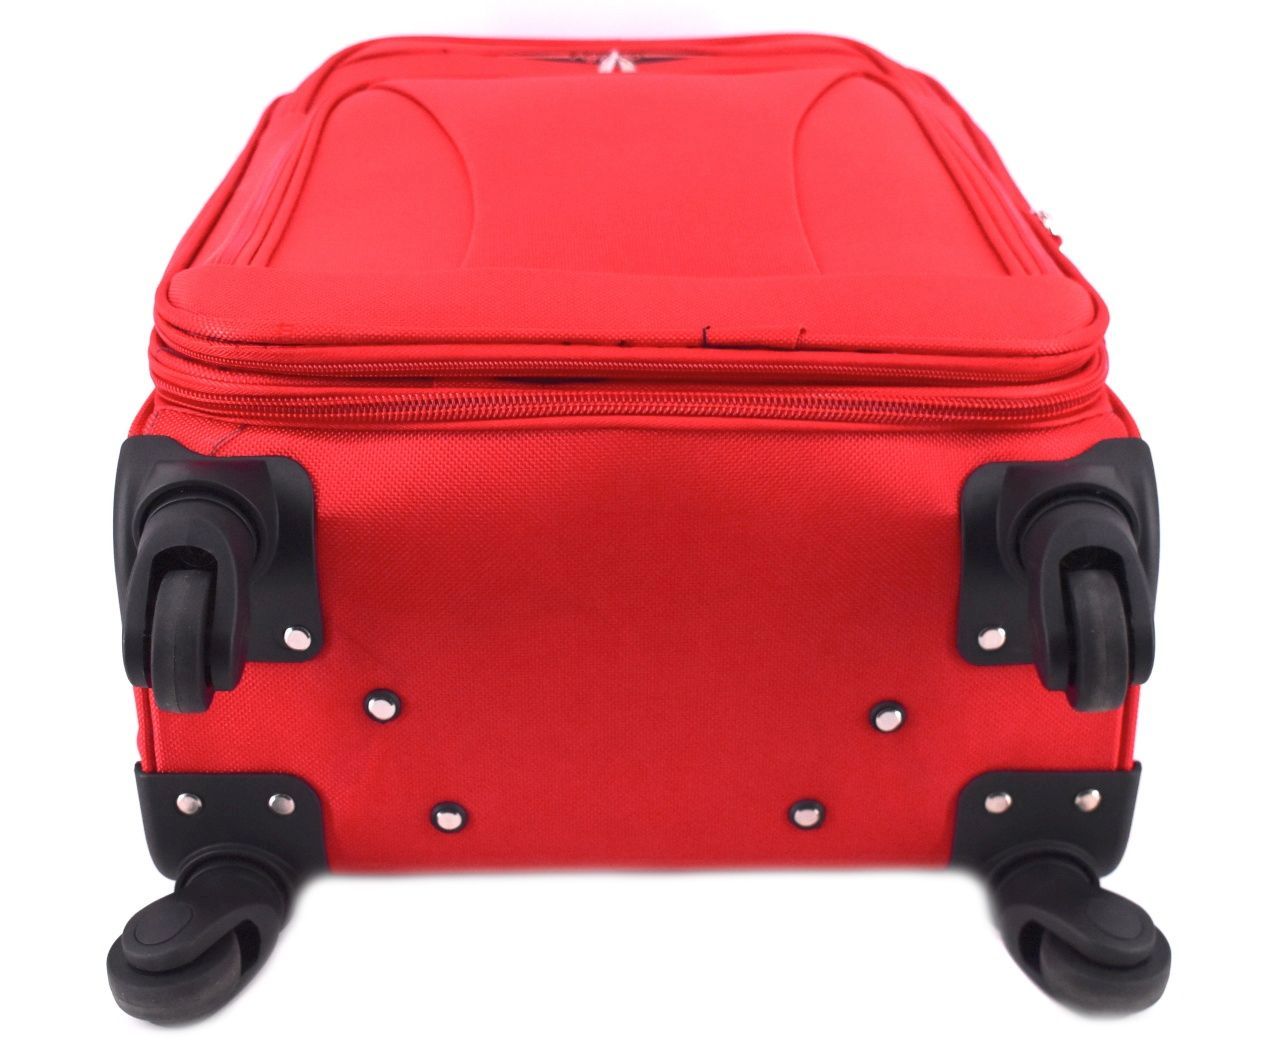 Cestovní textilní kufr na čtyřech kolečkách Agrado (S) 45l - tmavě zelená 8021 (S)